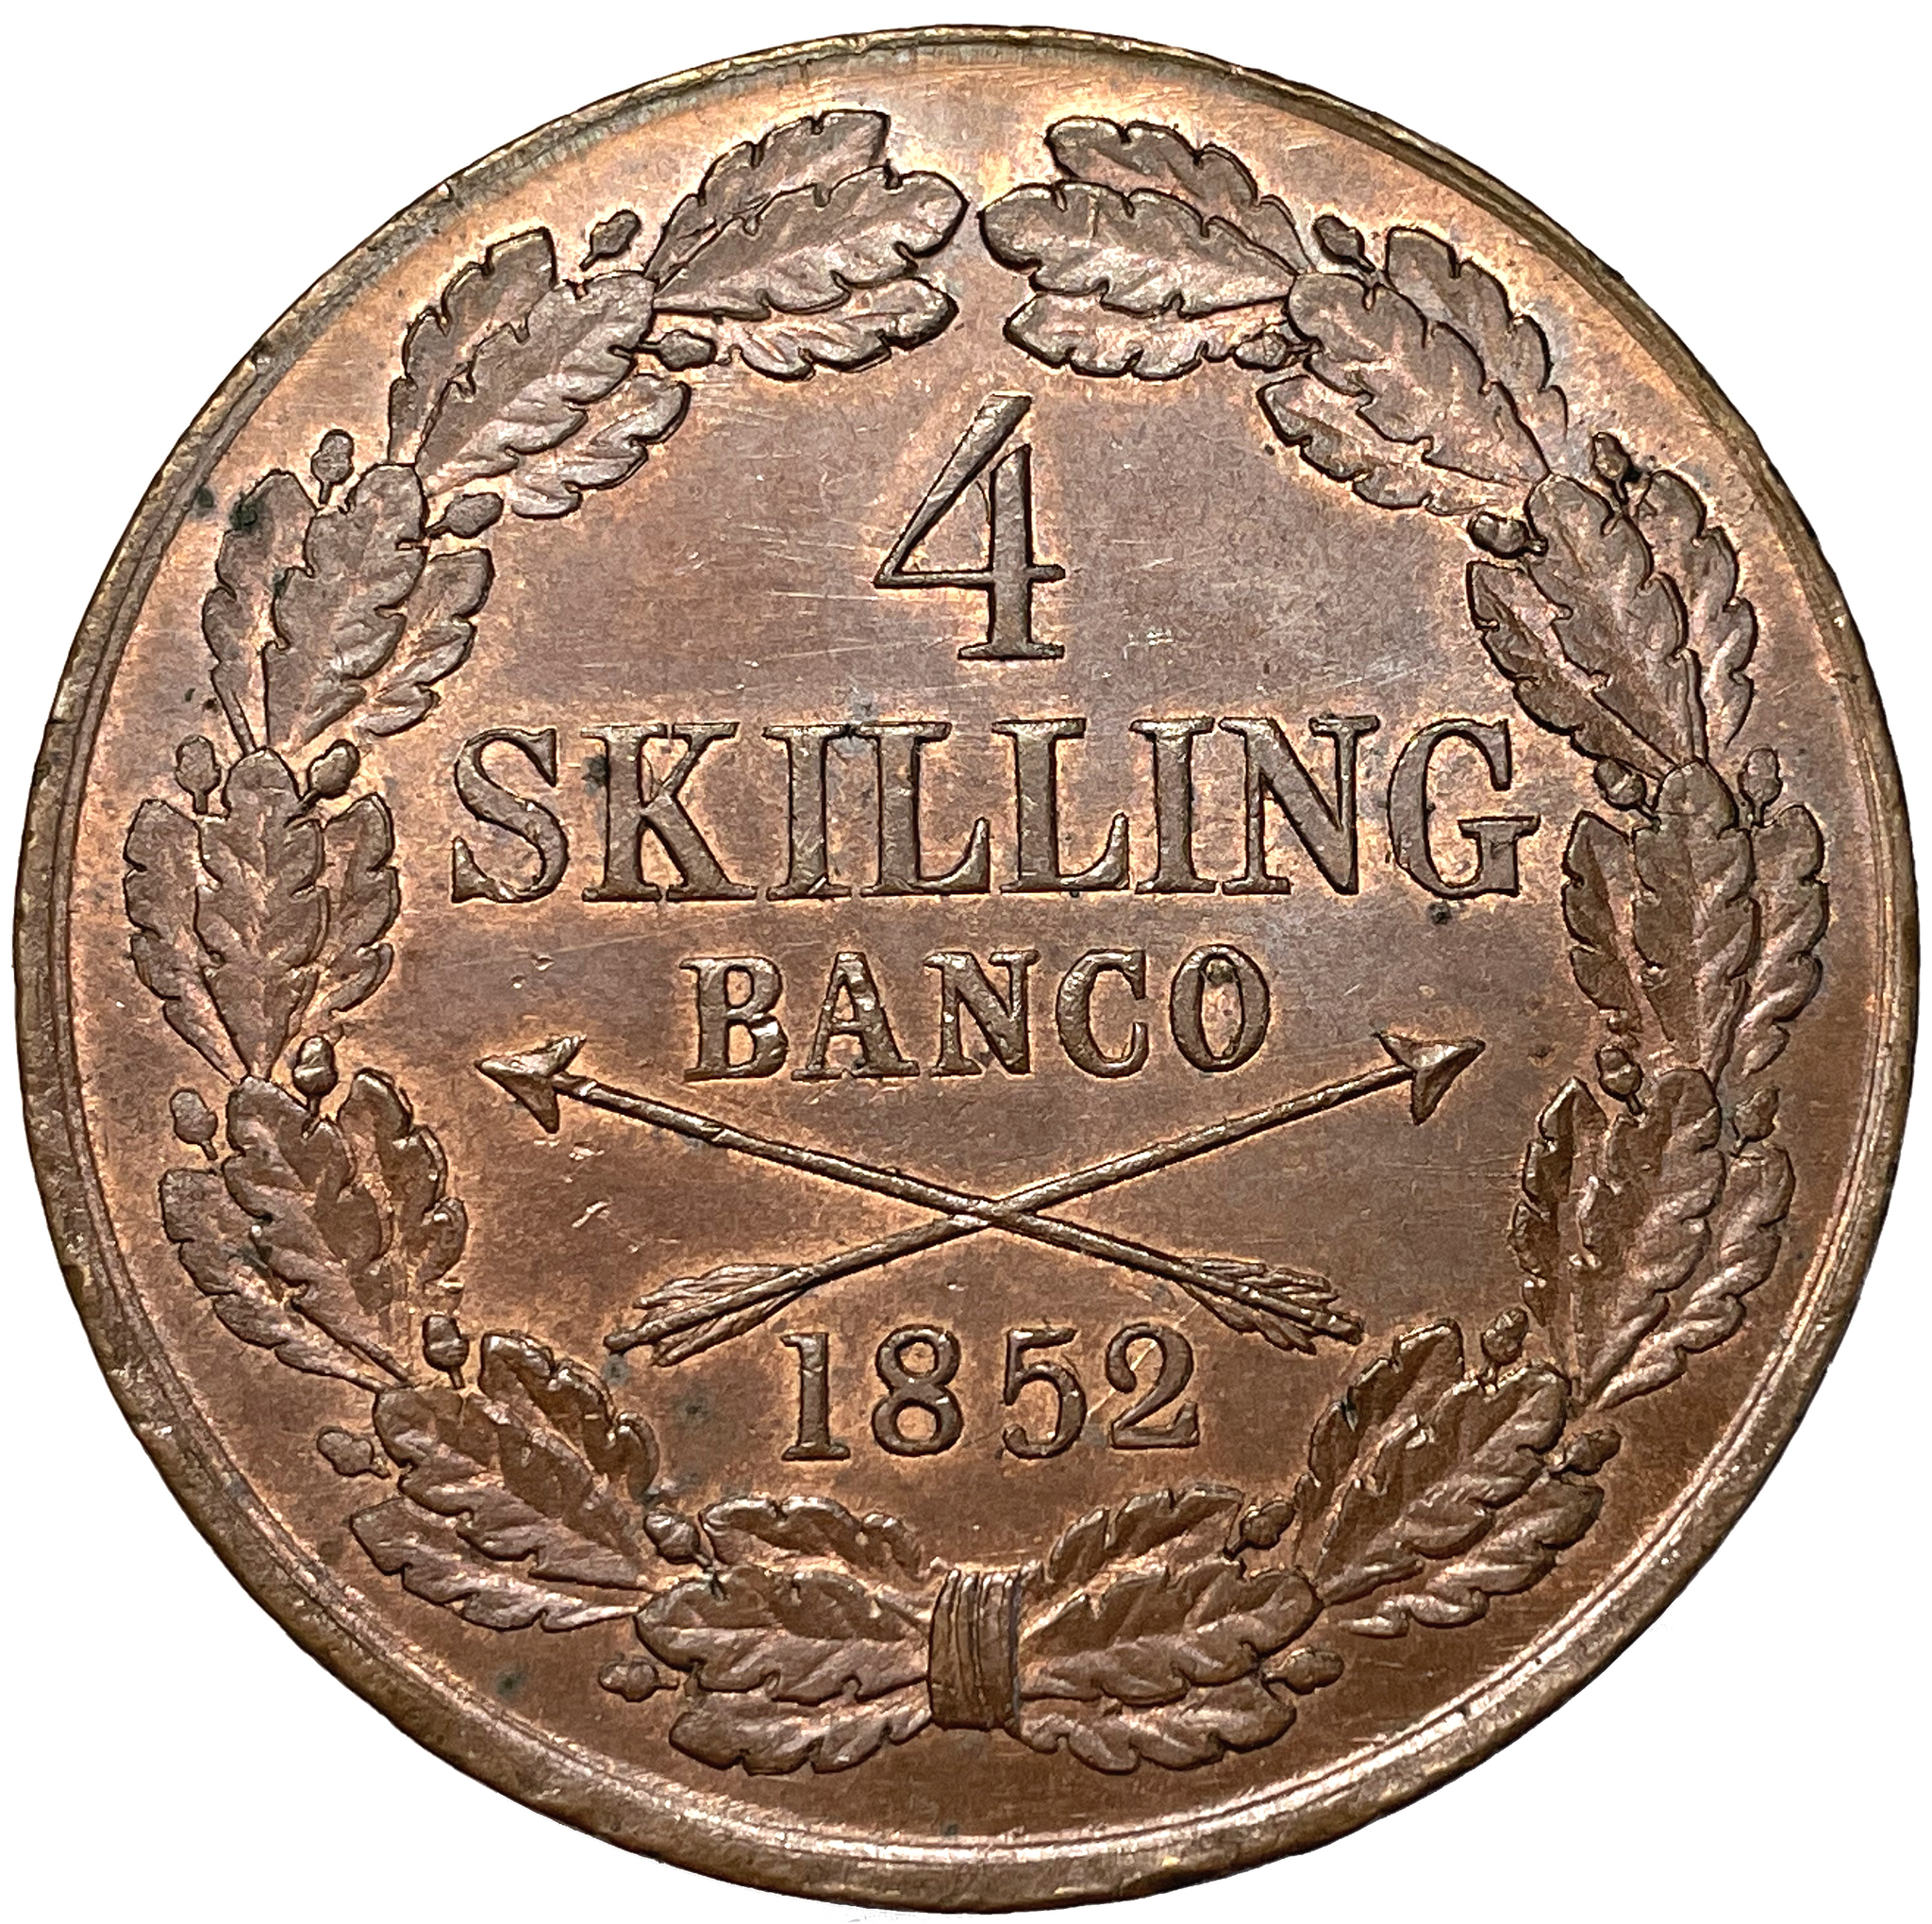 4 Skilling Banco 1852 - Vackert exemplar - Sällsynt årtal